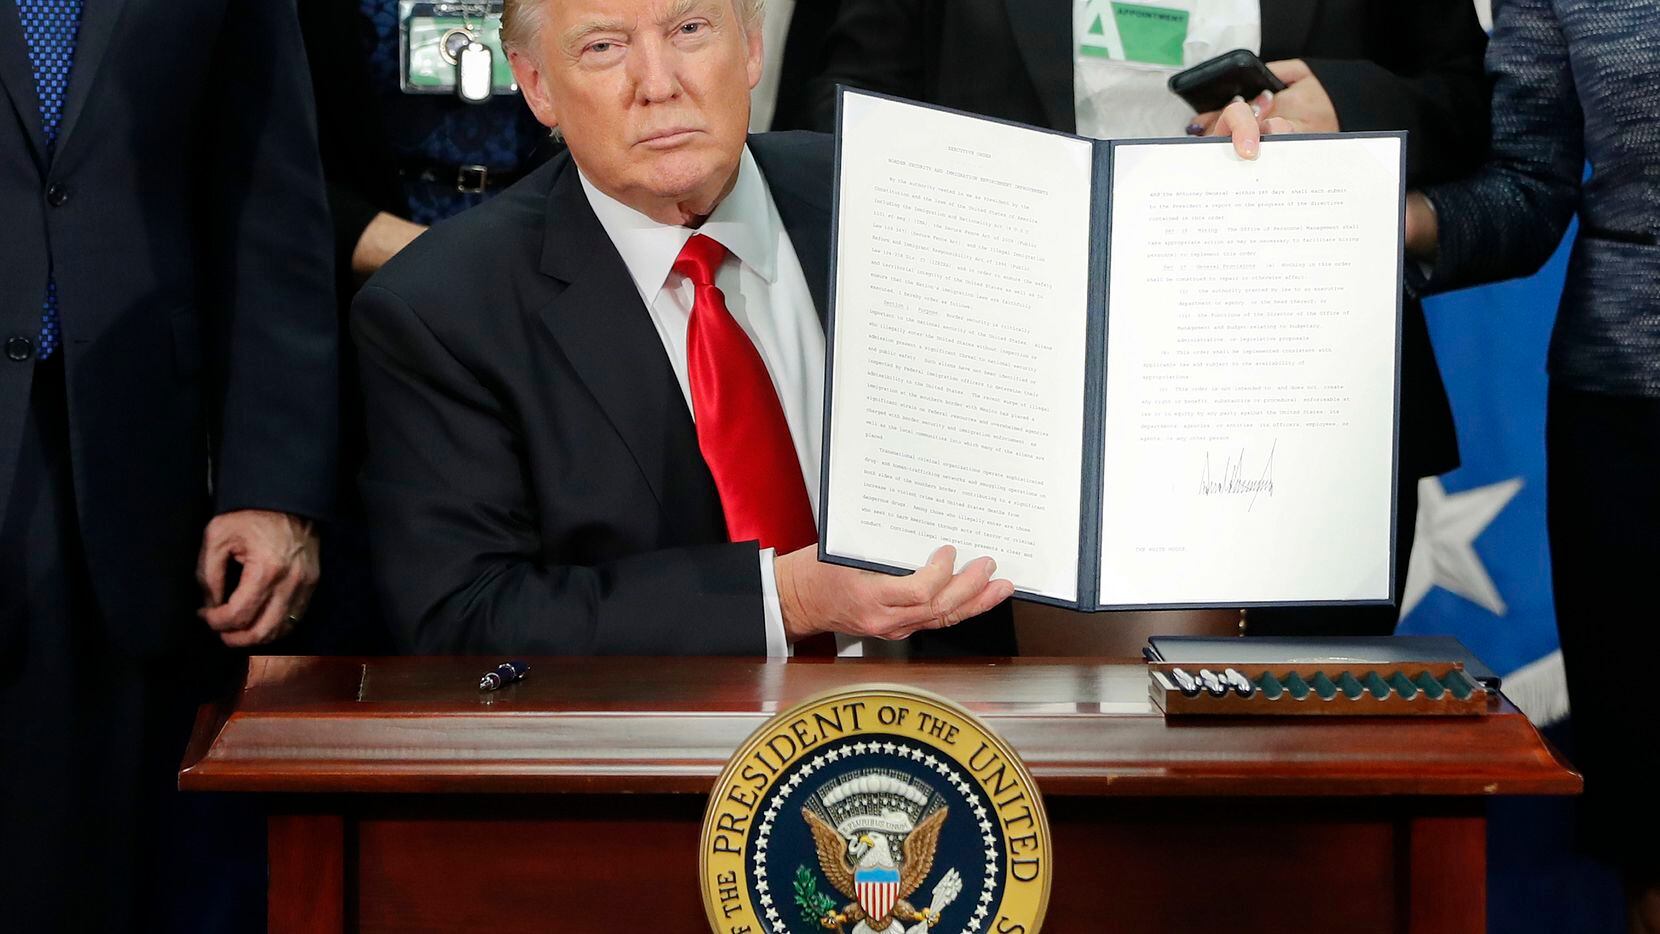 El presidente Donald Trump sostiene el documento de orden ejecutiva respecto a reforzamiento de la frontera y restricciones de visas, el 25 de enero de 2017.